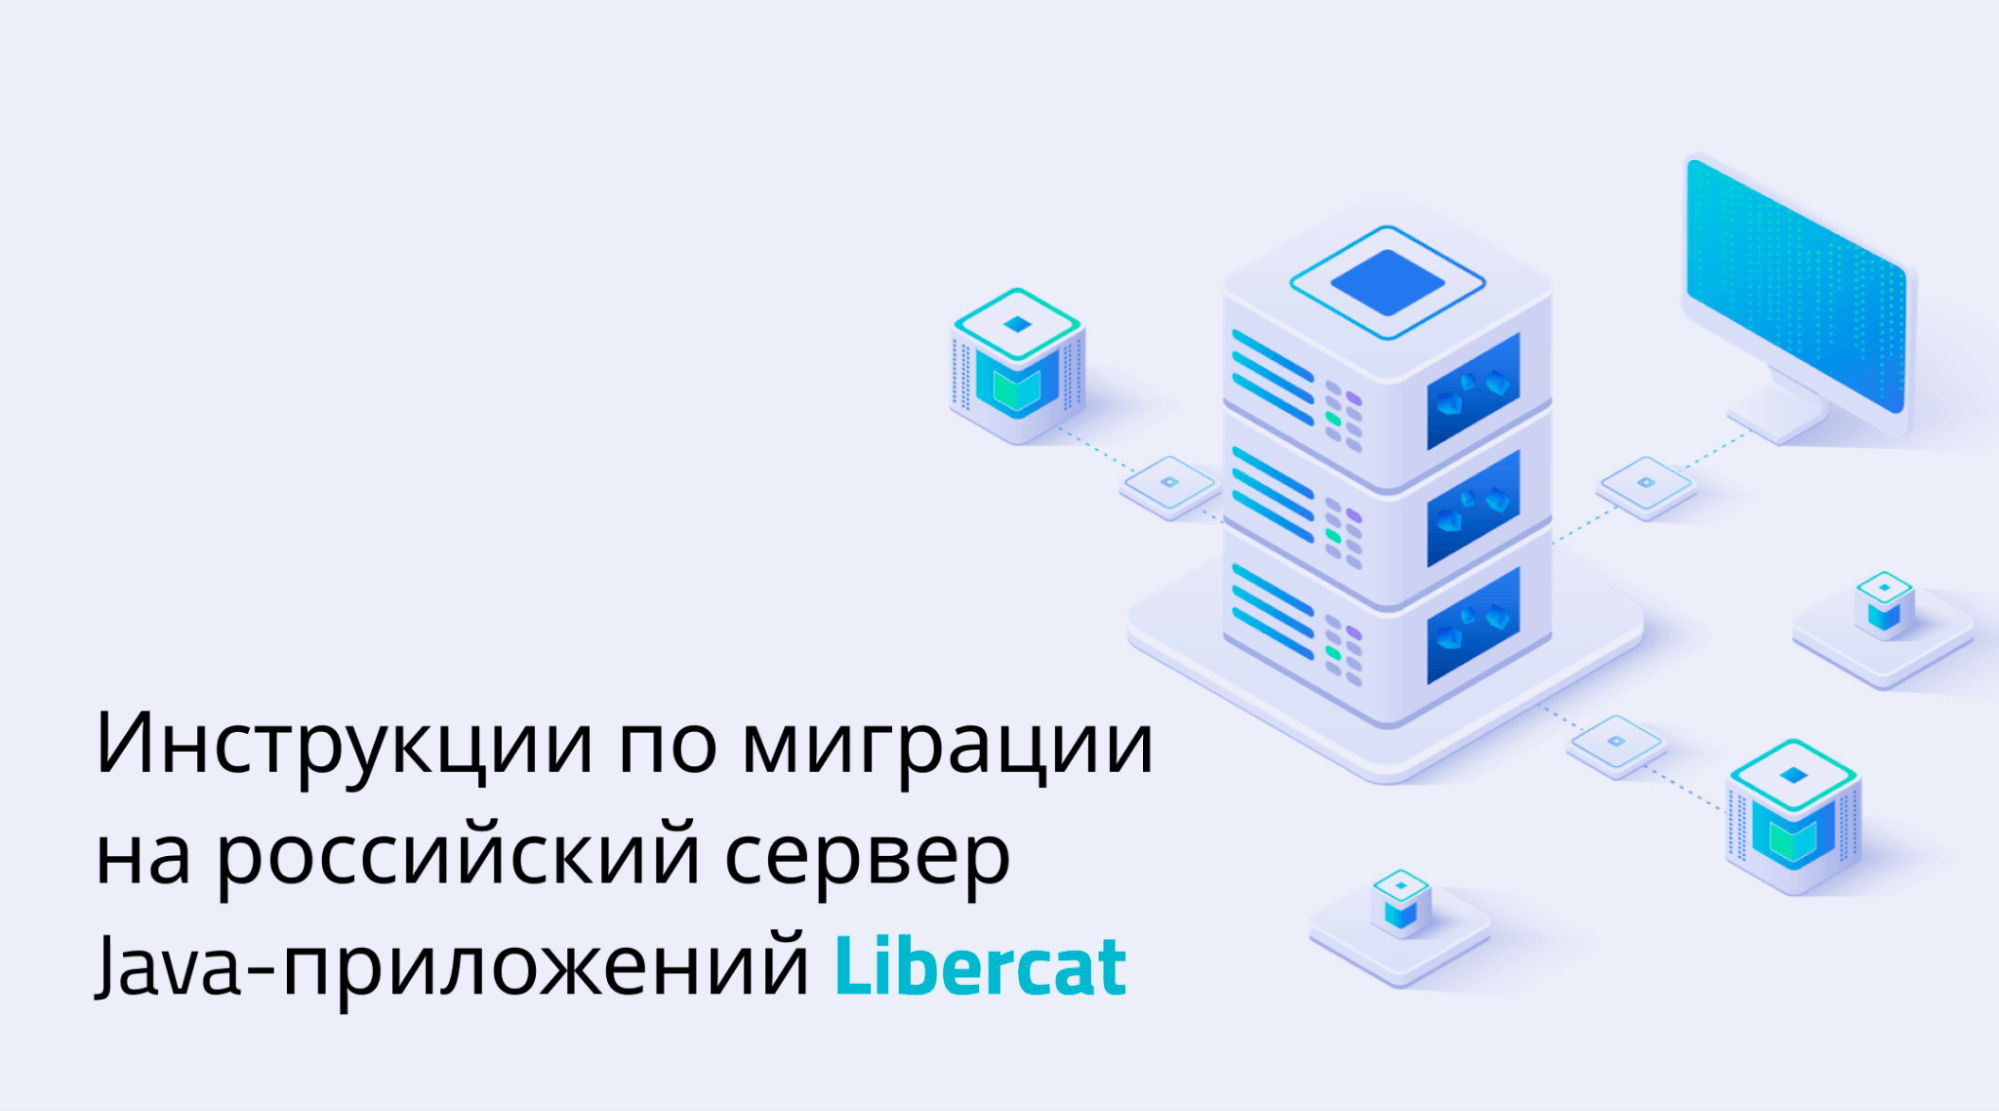 Миграция на российский сервер приложений Libercat с WebLogic, WebSphere и других зарубежных решений